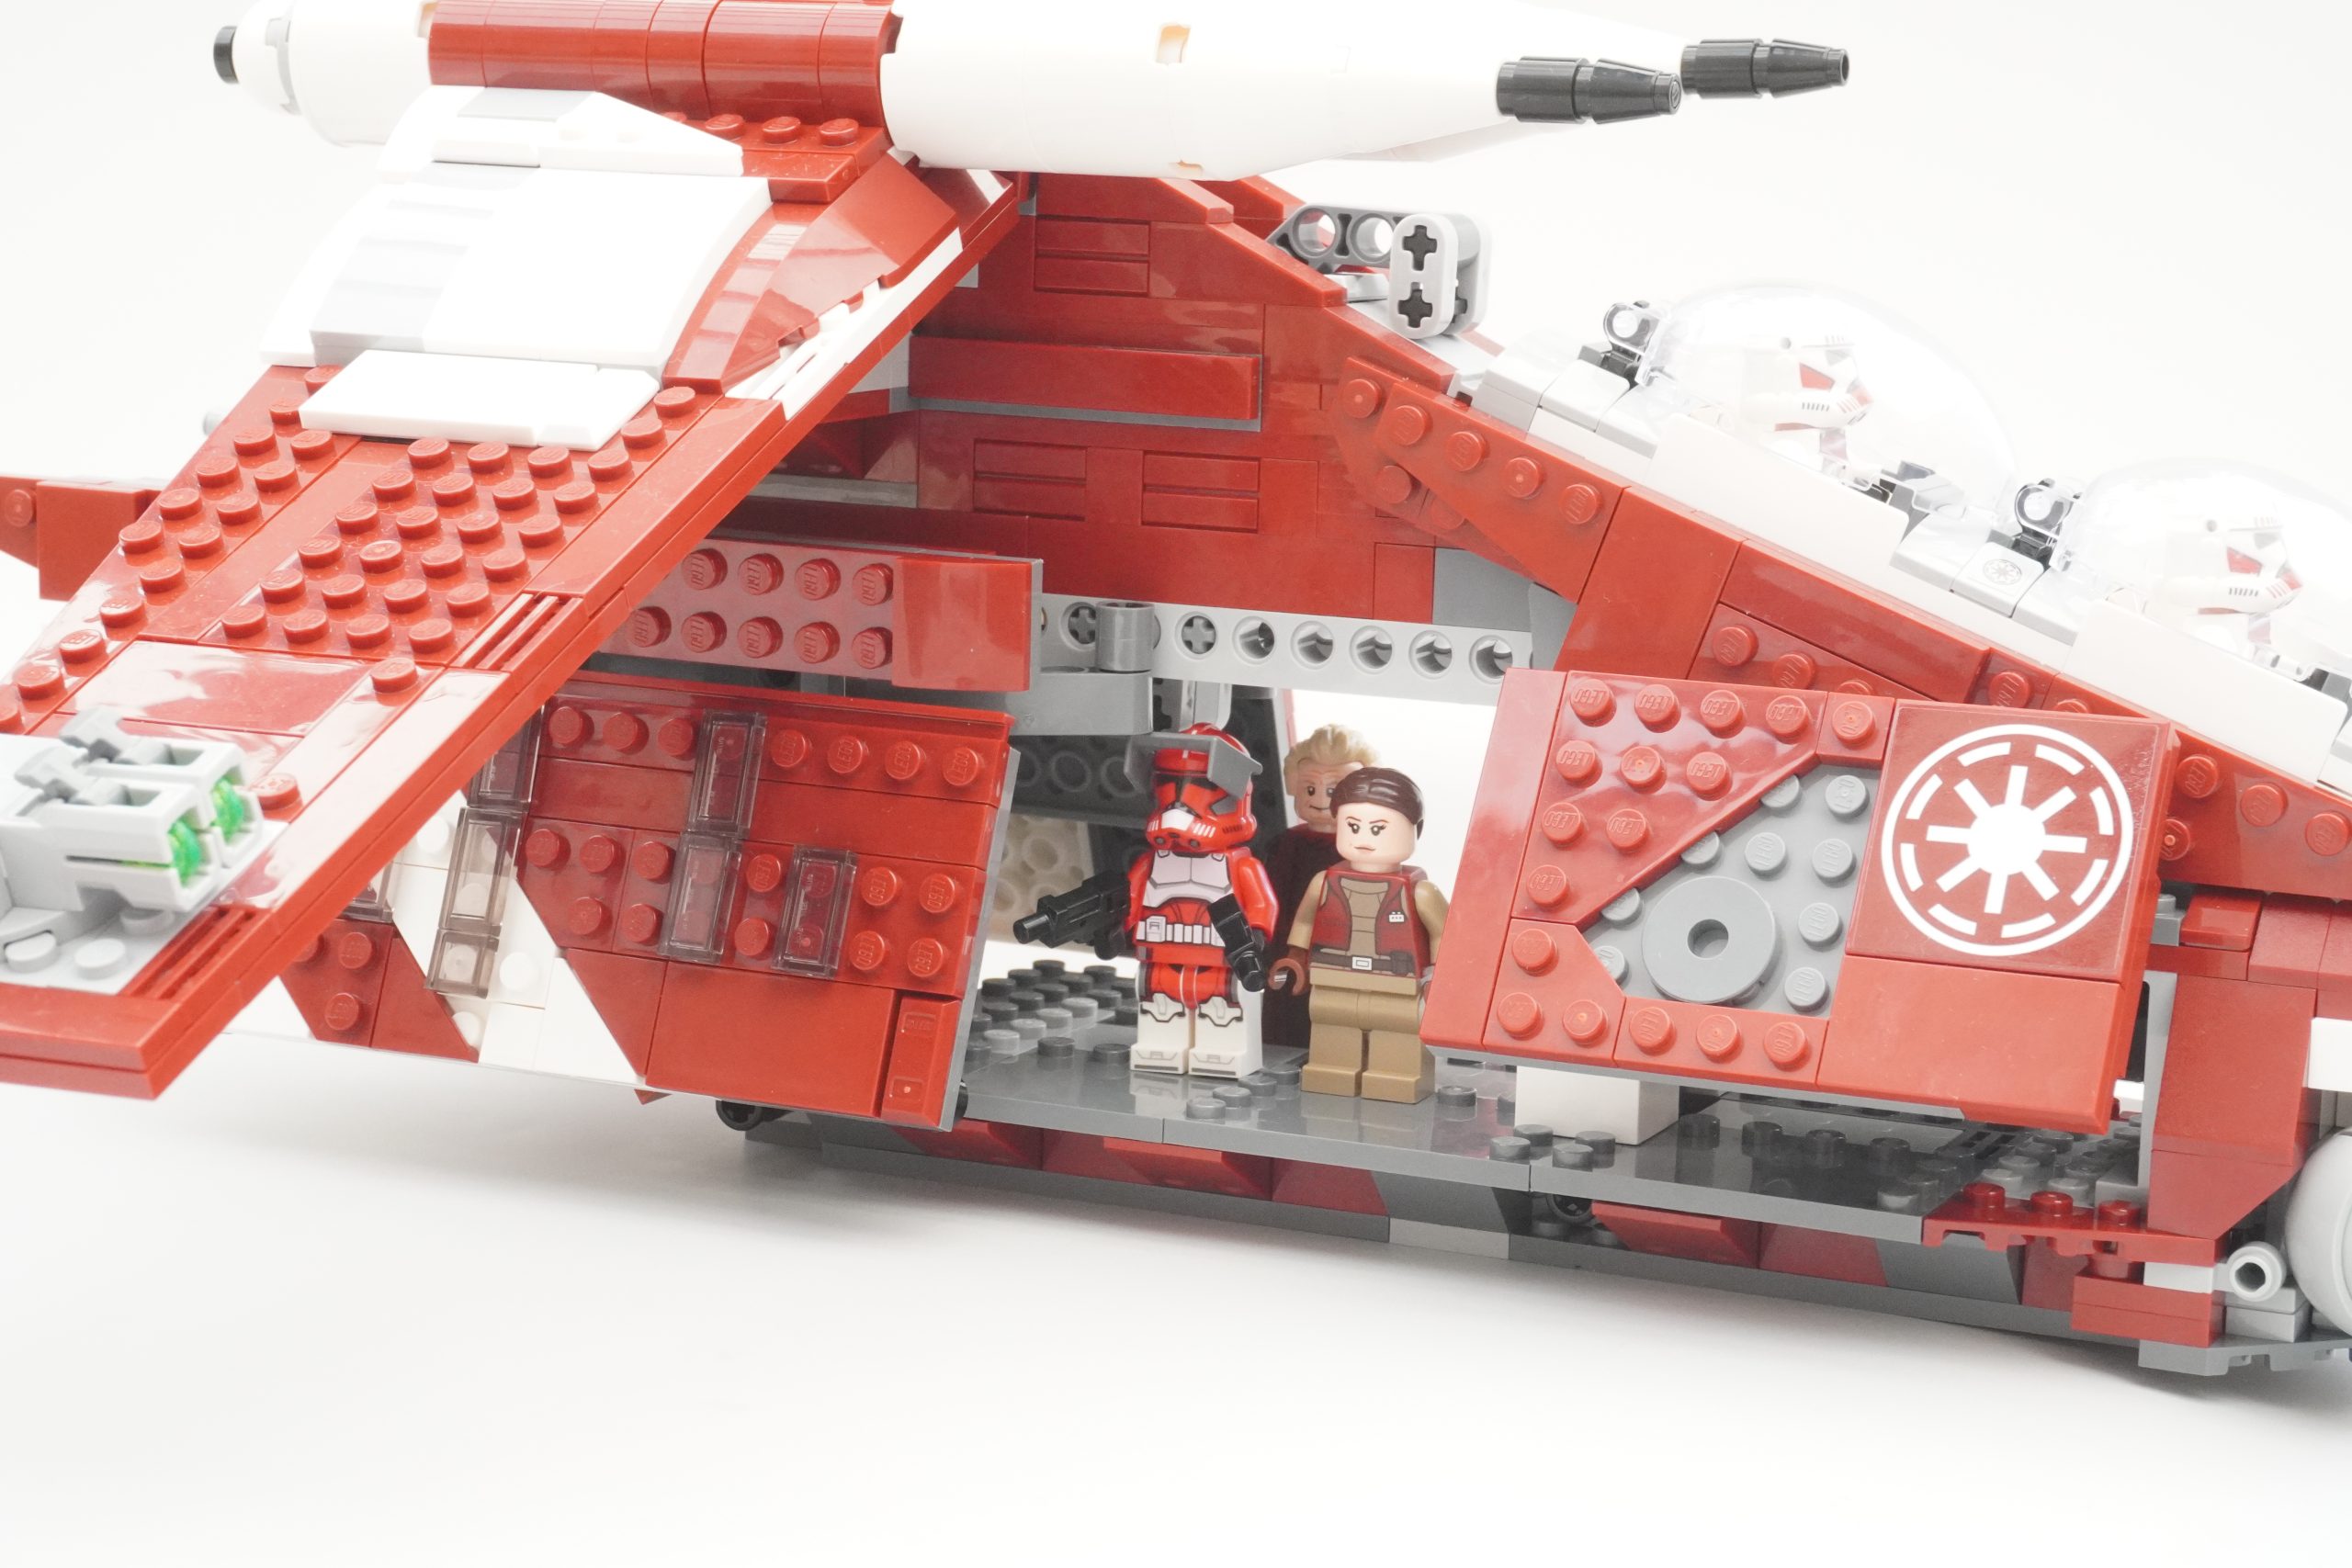 LEGO 75354 Coruscant Guard Gunship UK/EU prices confirmed